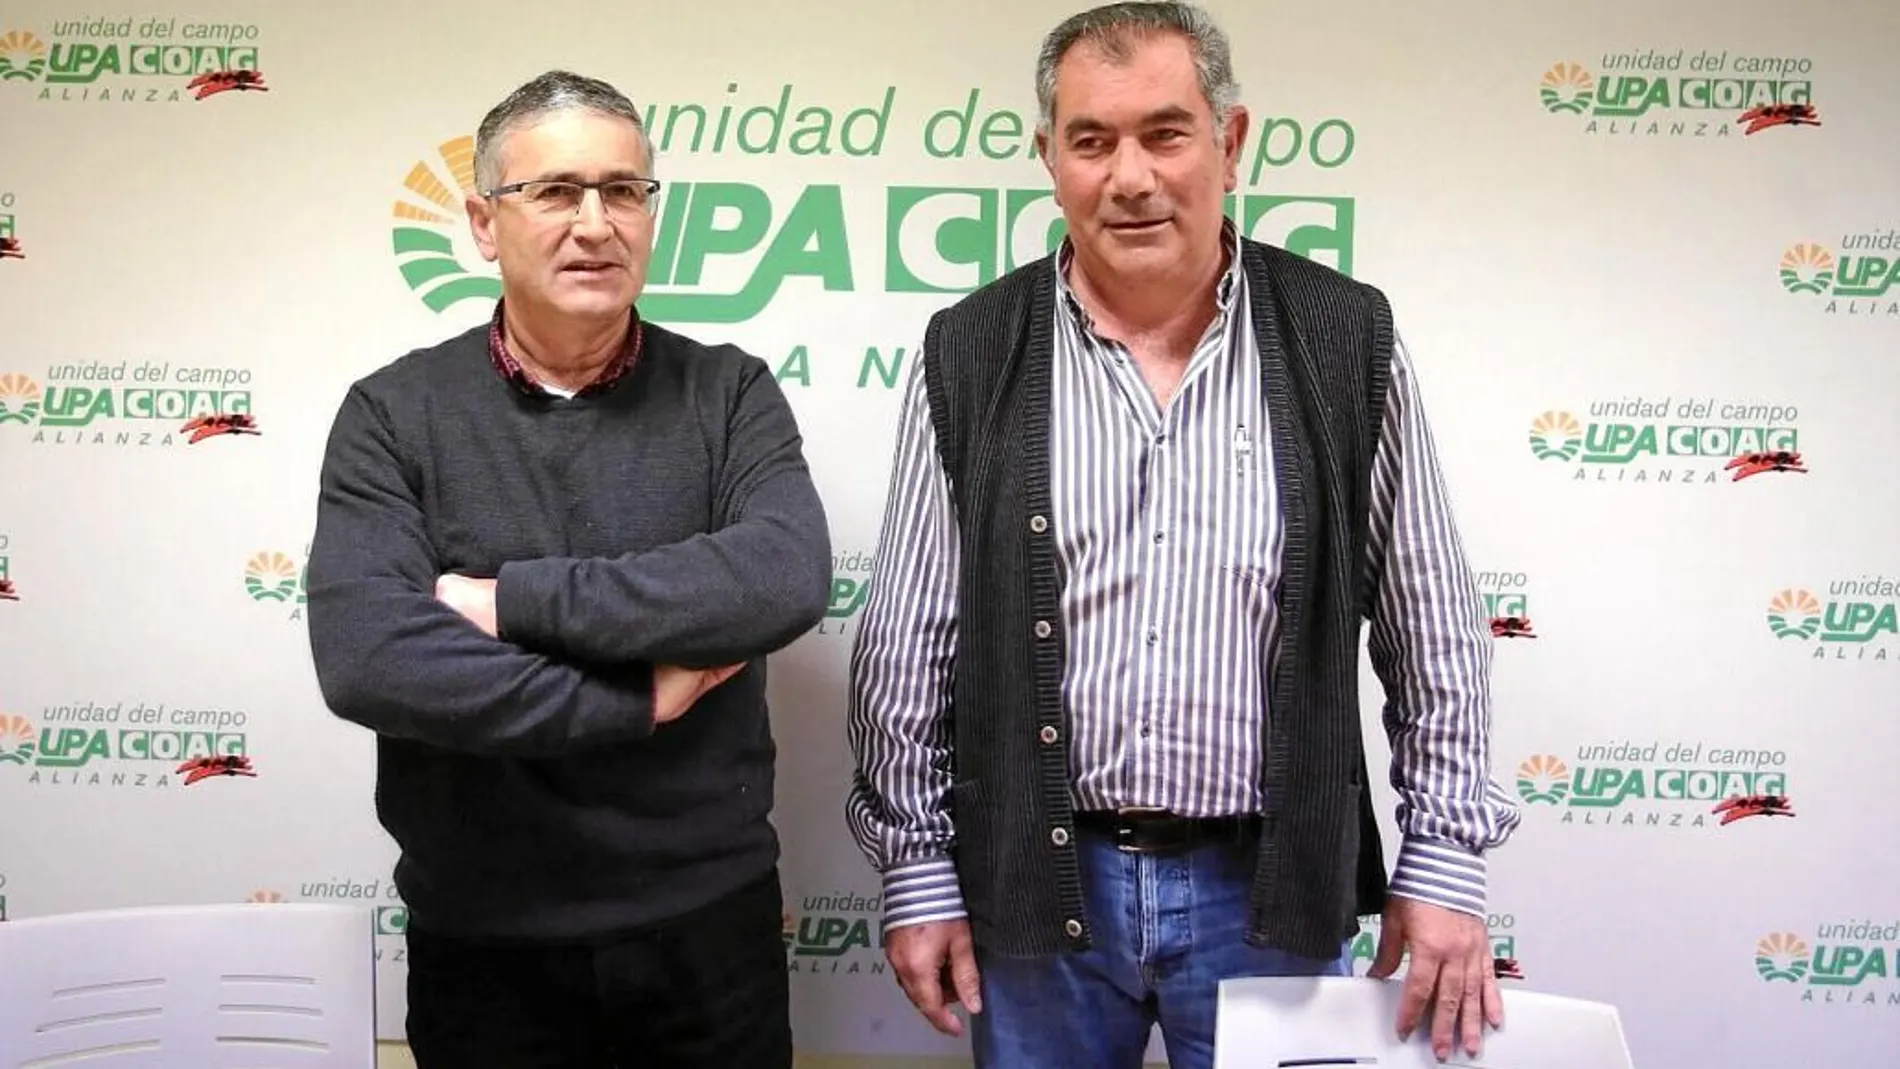 Aurelio González y Lorenzo Rivera, coordinadora de la Alianza porla Unidad del Campo que conforman las organizaciones agrarias Coag y Upa, están preocupados por la sequía de este año que amenaza seriamente a los cultivos de primavera.